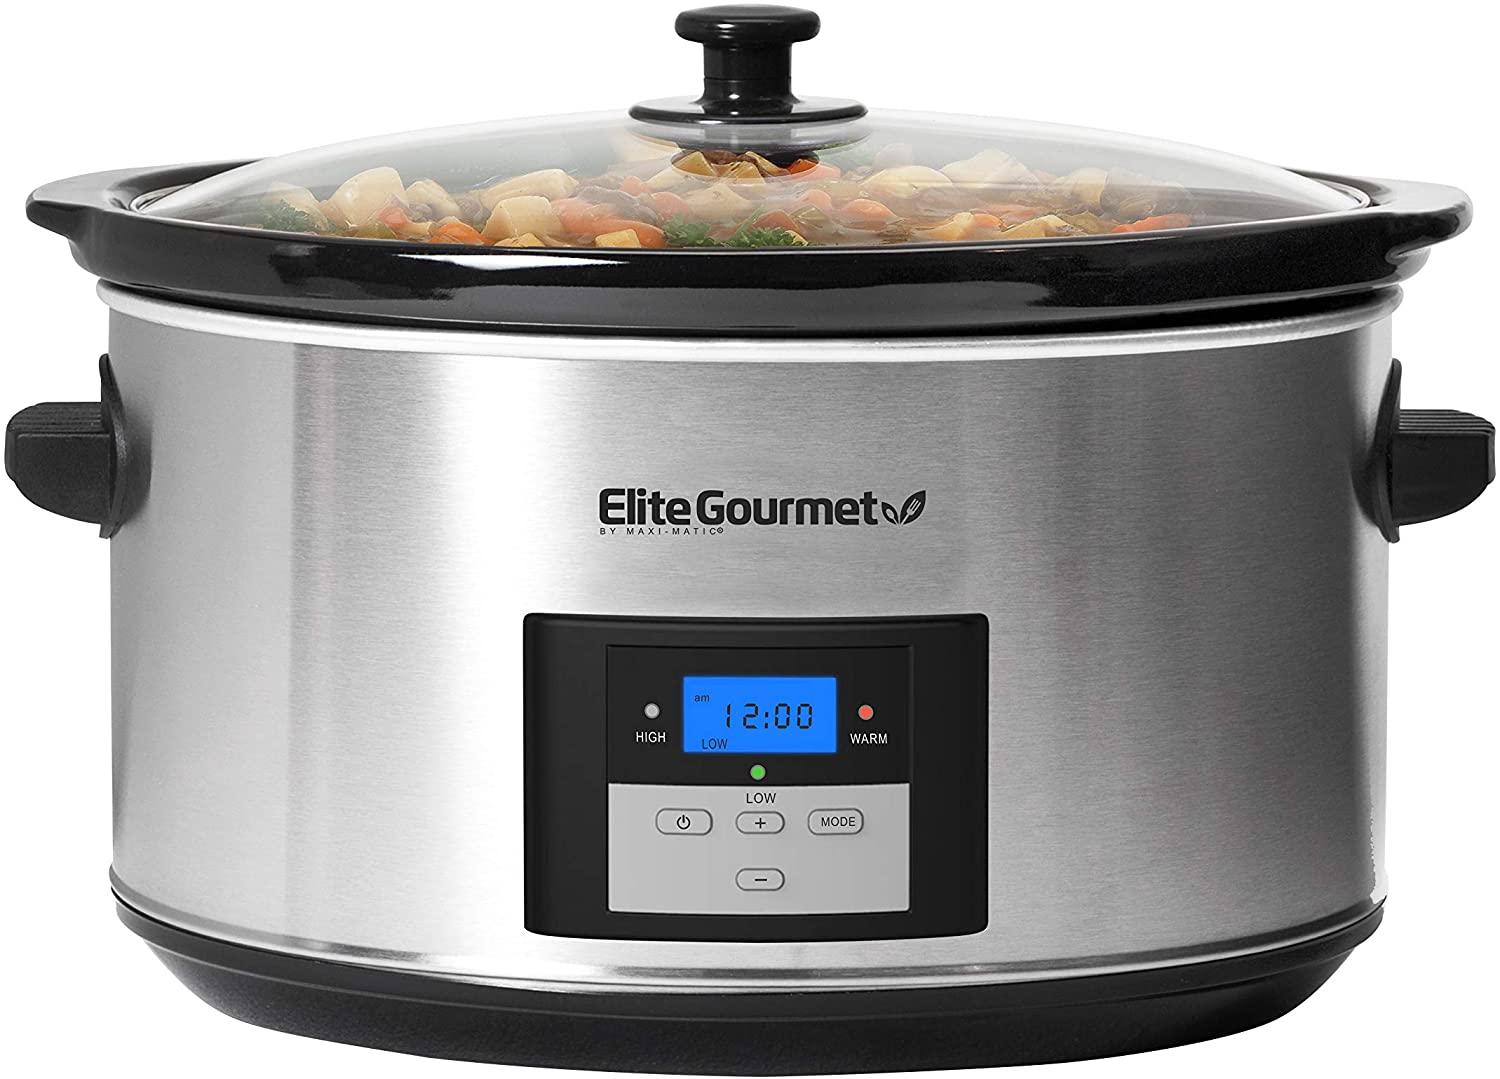 https://www.dontwasteyourmoney.com/wp-content/uploads/2021/12/elite-gourmet-mst-900d-programmable-easy-clean-slow-cooker-slow-cooker.jpg